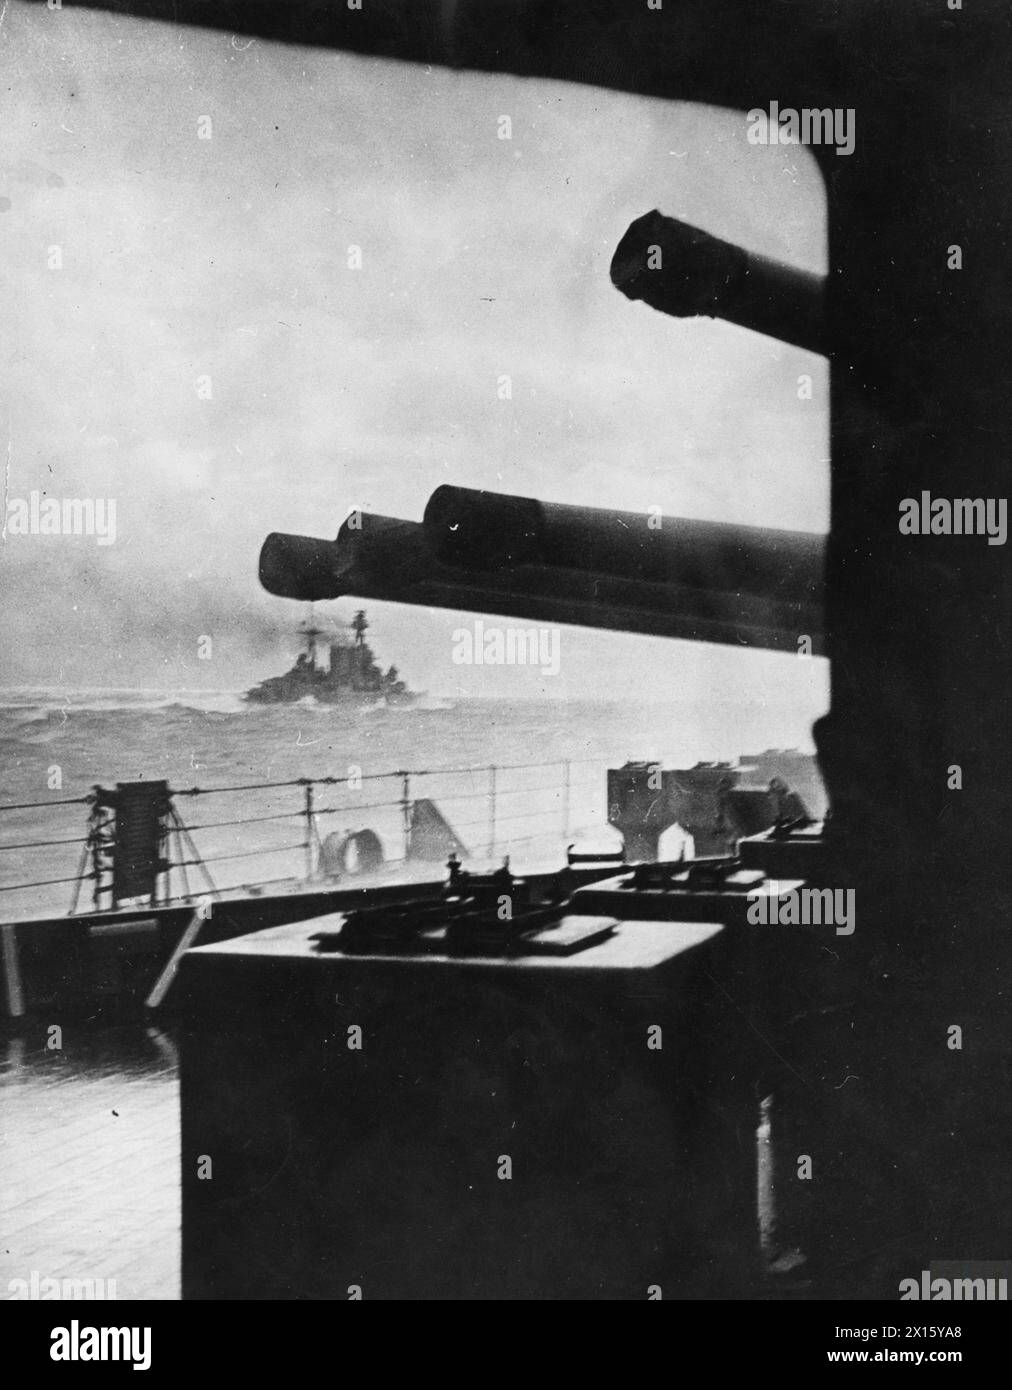 HMS HOOD - HMS HOOD entrando en acción contra el acorazado alemán BISMARCK y el crucero de batalla Prinz Eugen, 24 de mayo de 1941. Esta imagen tomada por HMS PRINCE OF WALES fue la última foto jamás tomada de HMS Hood Hood Foto de stock